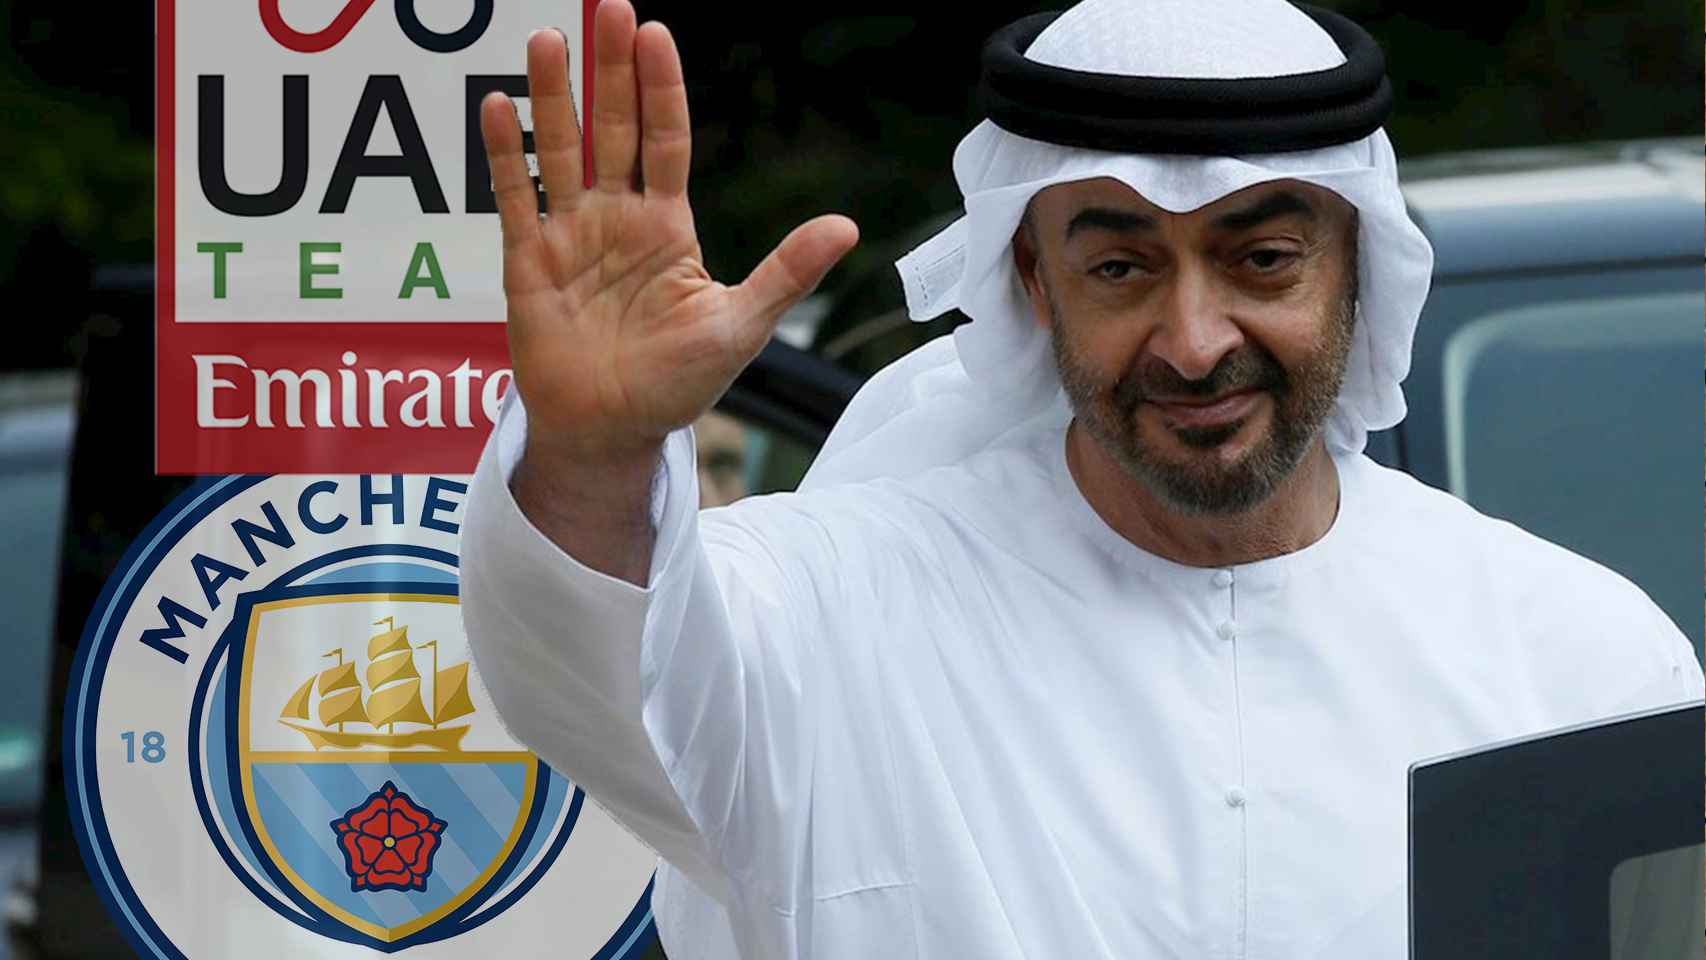 Sheikh Mansour, el hombre detrás del Manchester City y del UAE Team Emirates